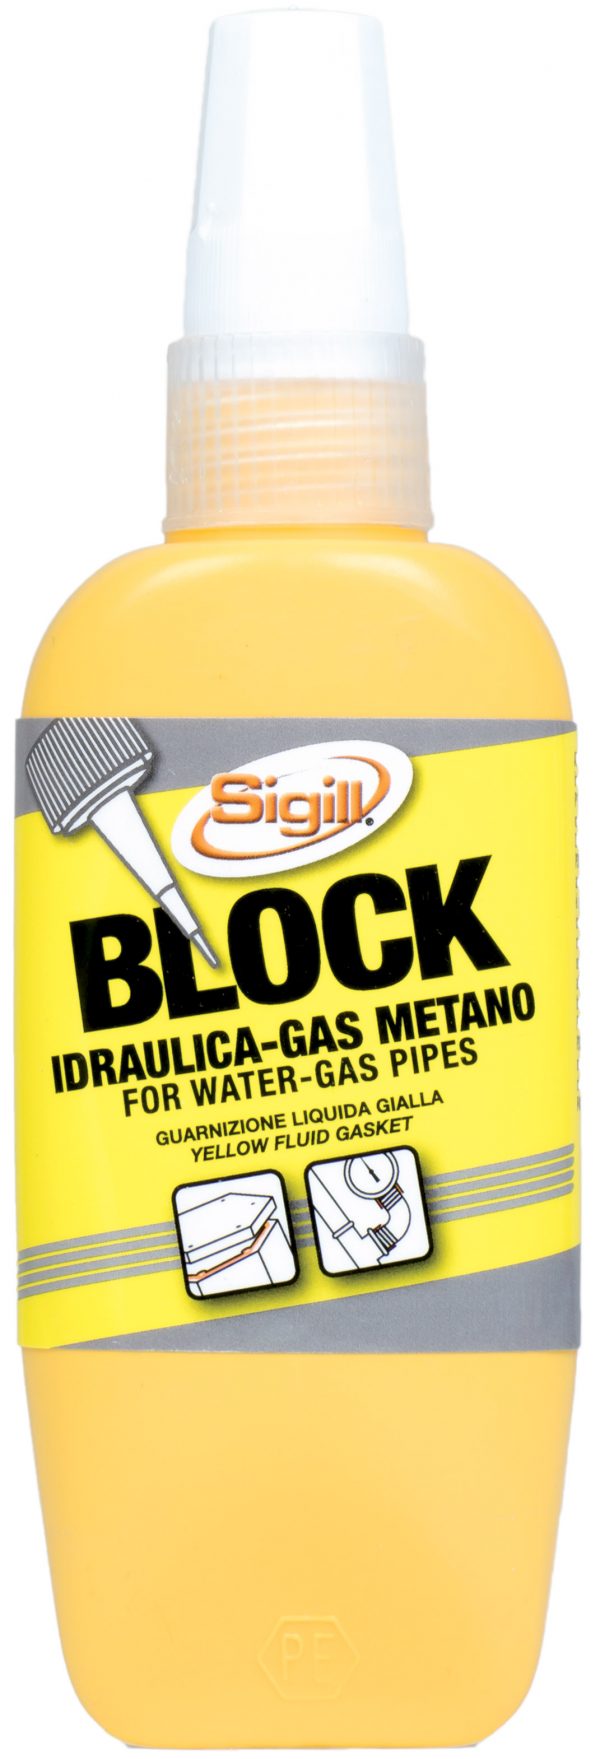 BLOCK IDRAULICA-GAS METANO , bloccante